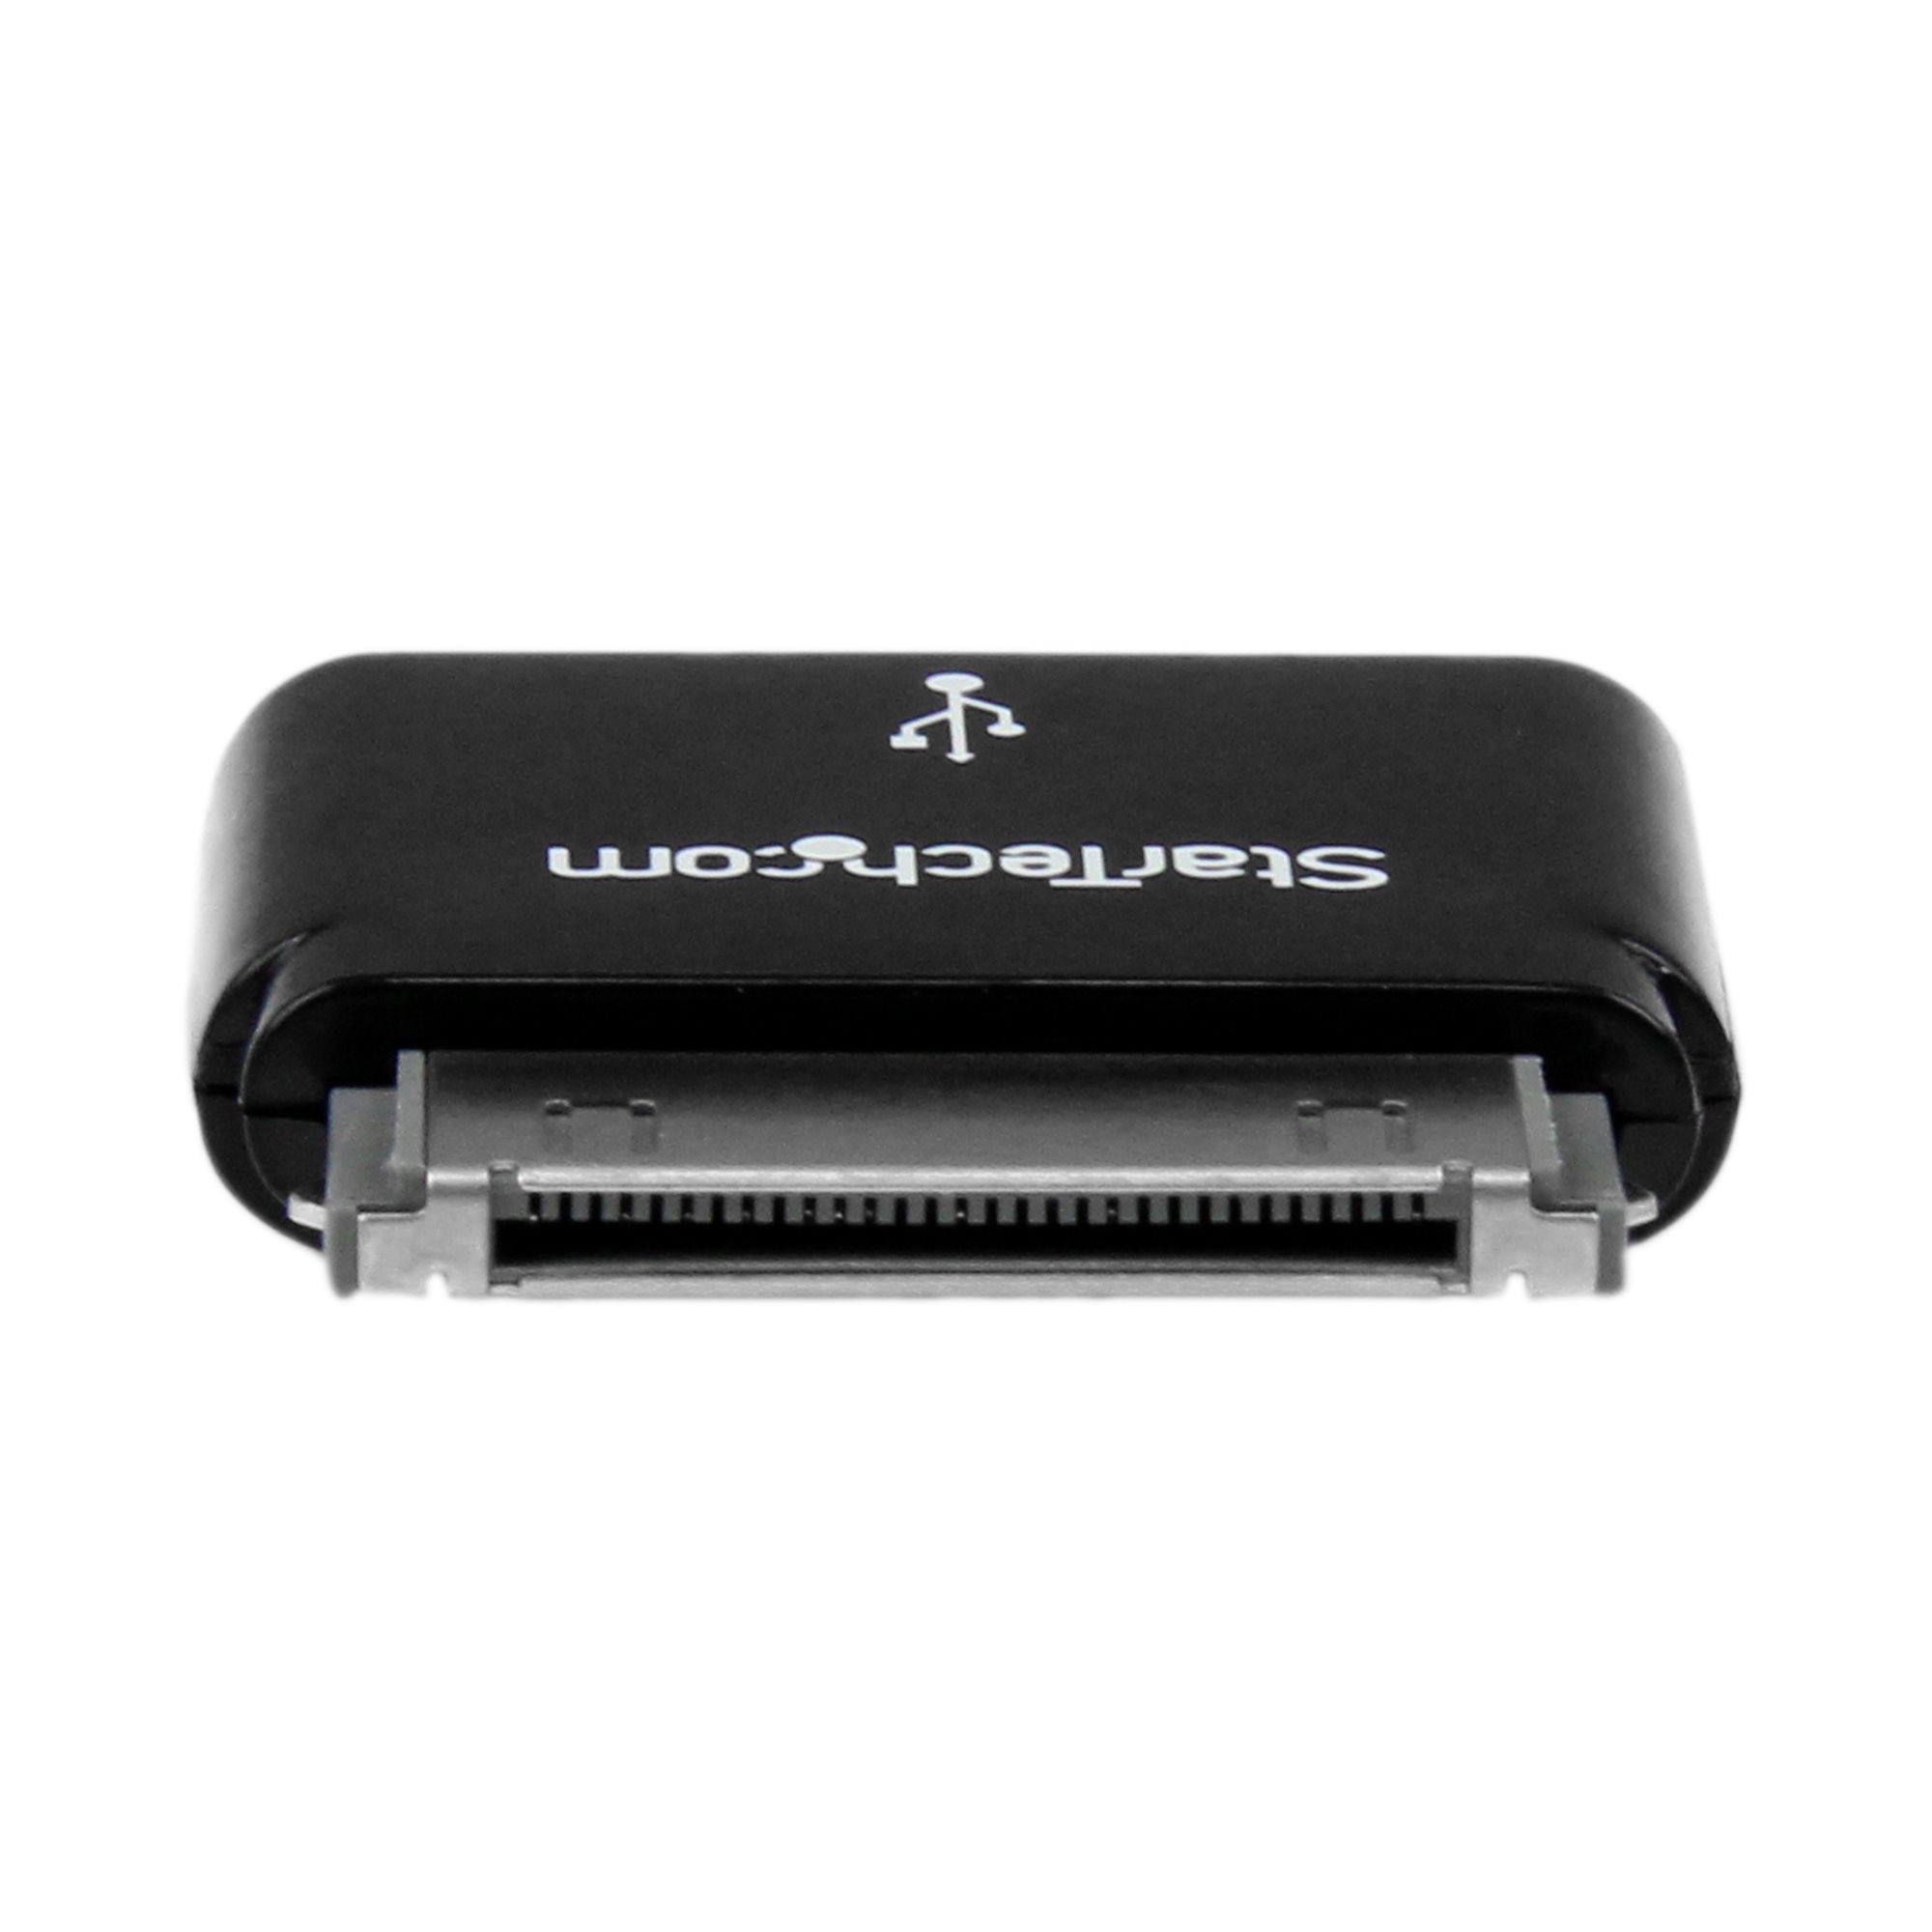 IPRIME 2in1 Adapter 30-polig/Micro USB auf 8-Pin kompatibel mit iPhone und iPad Schwarz 